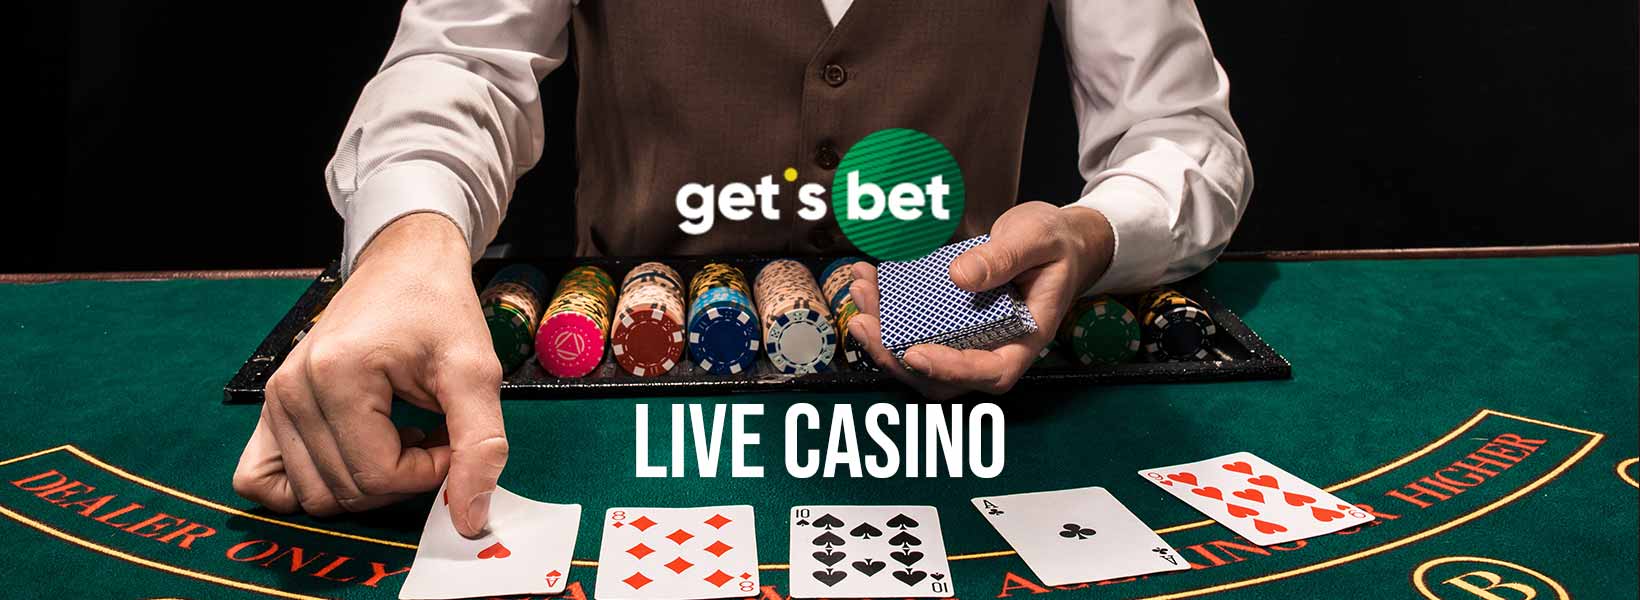 gets bet live casino